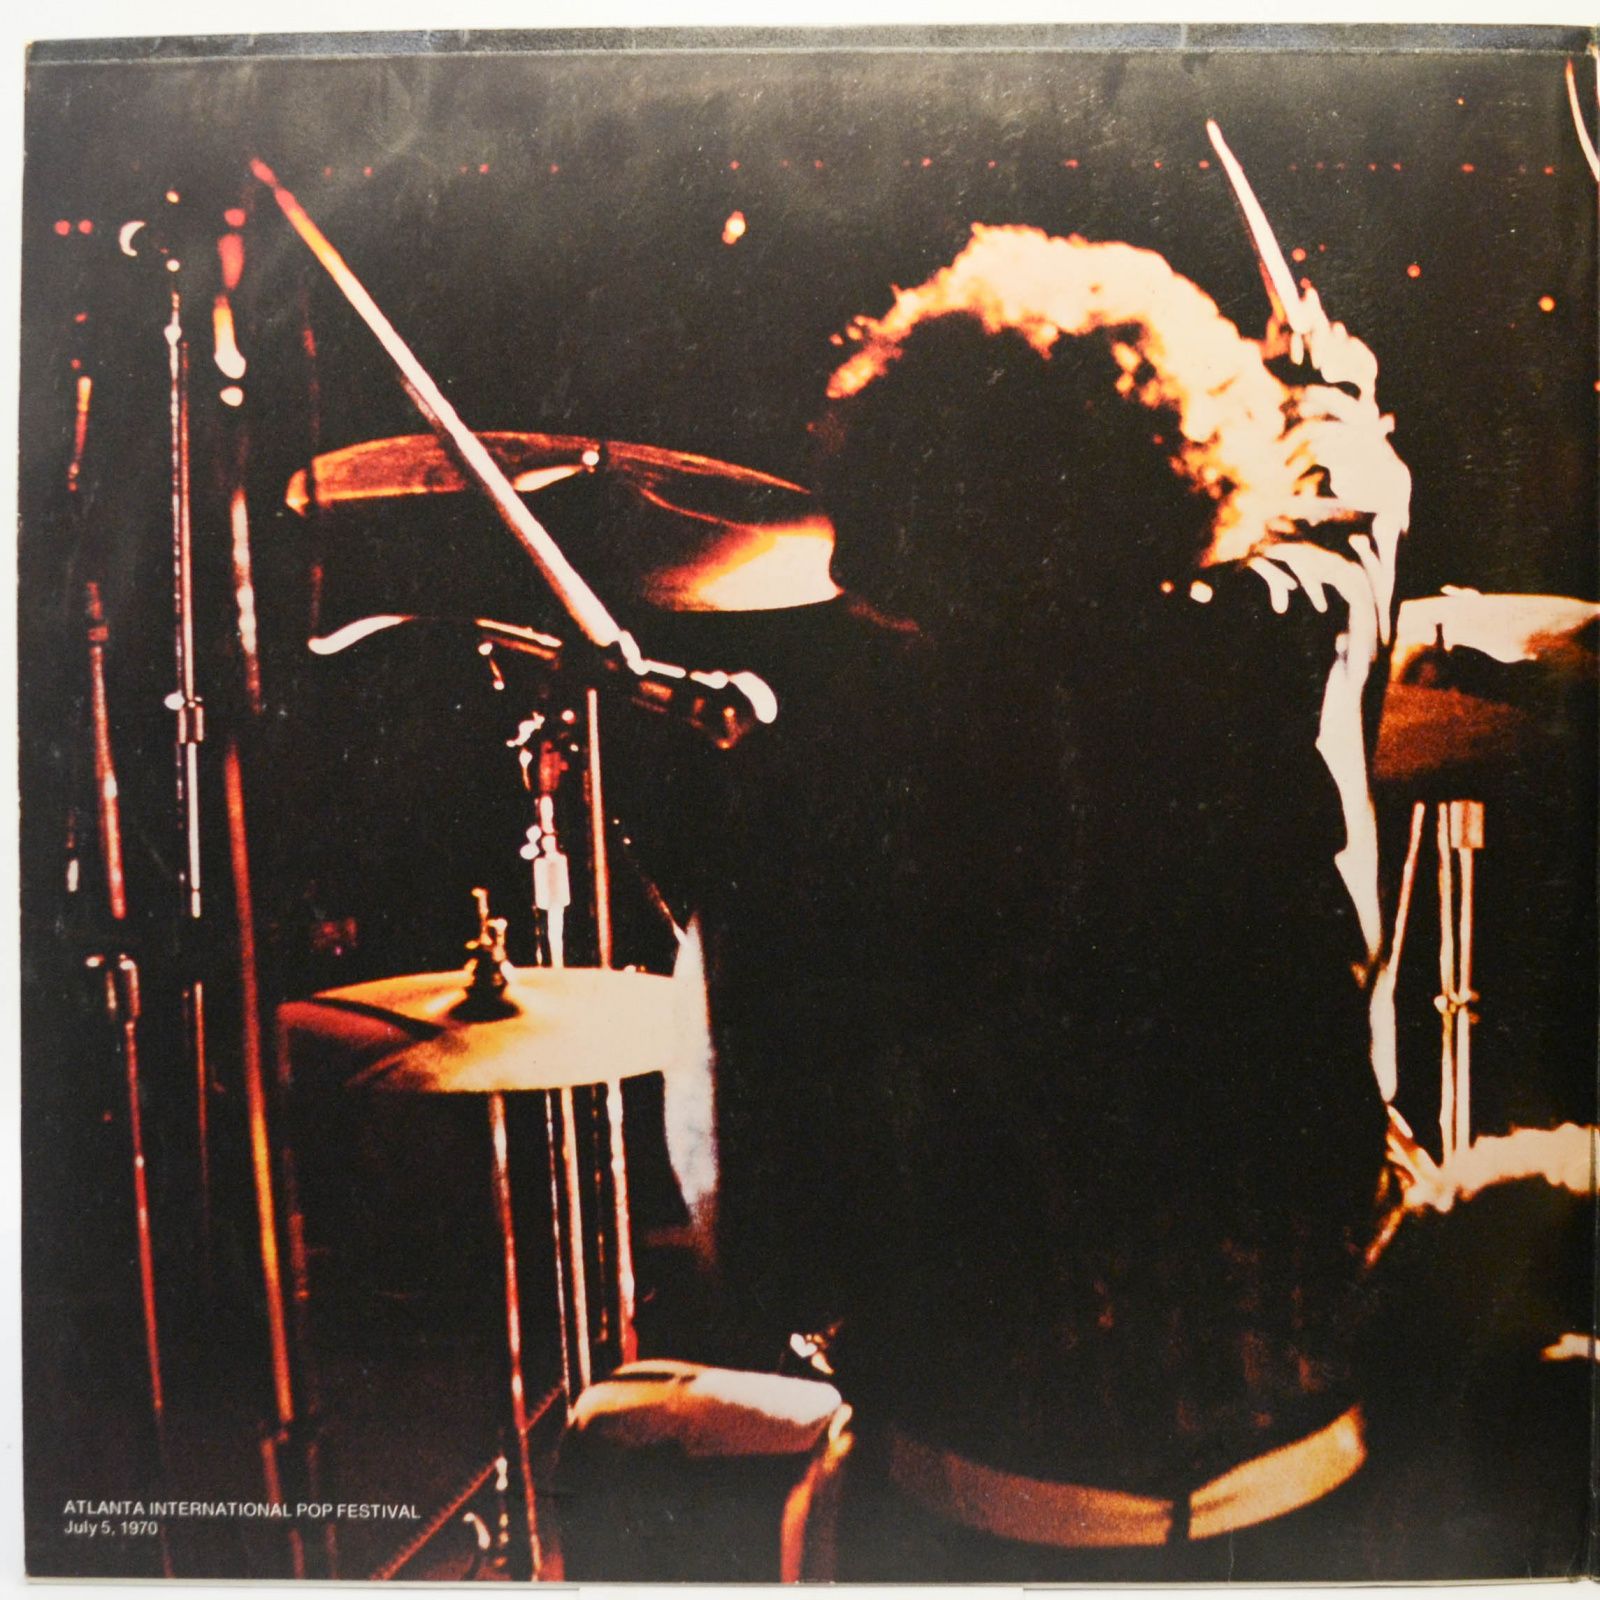 Grand Funk — Live Album (2LP), 1970